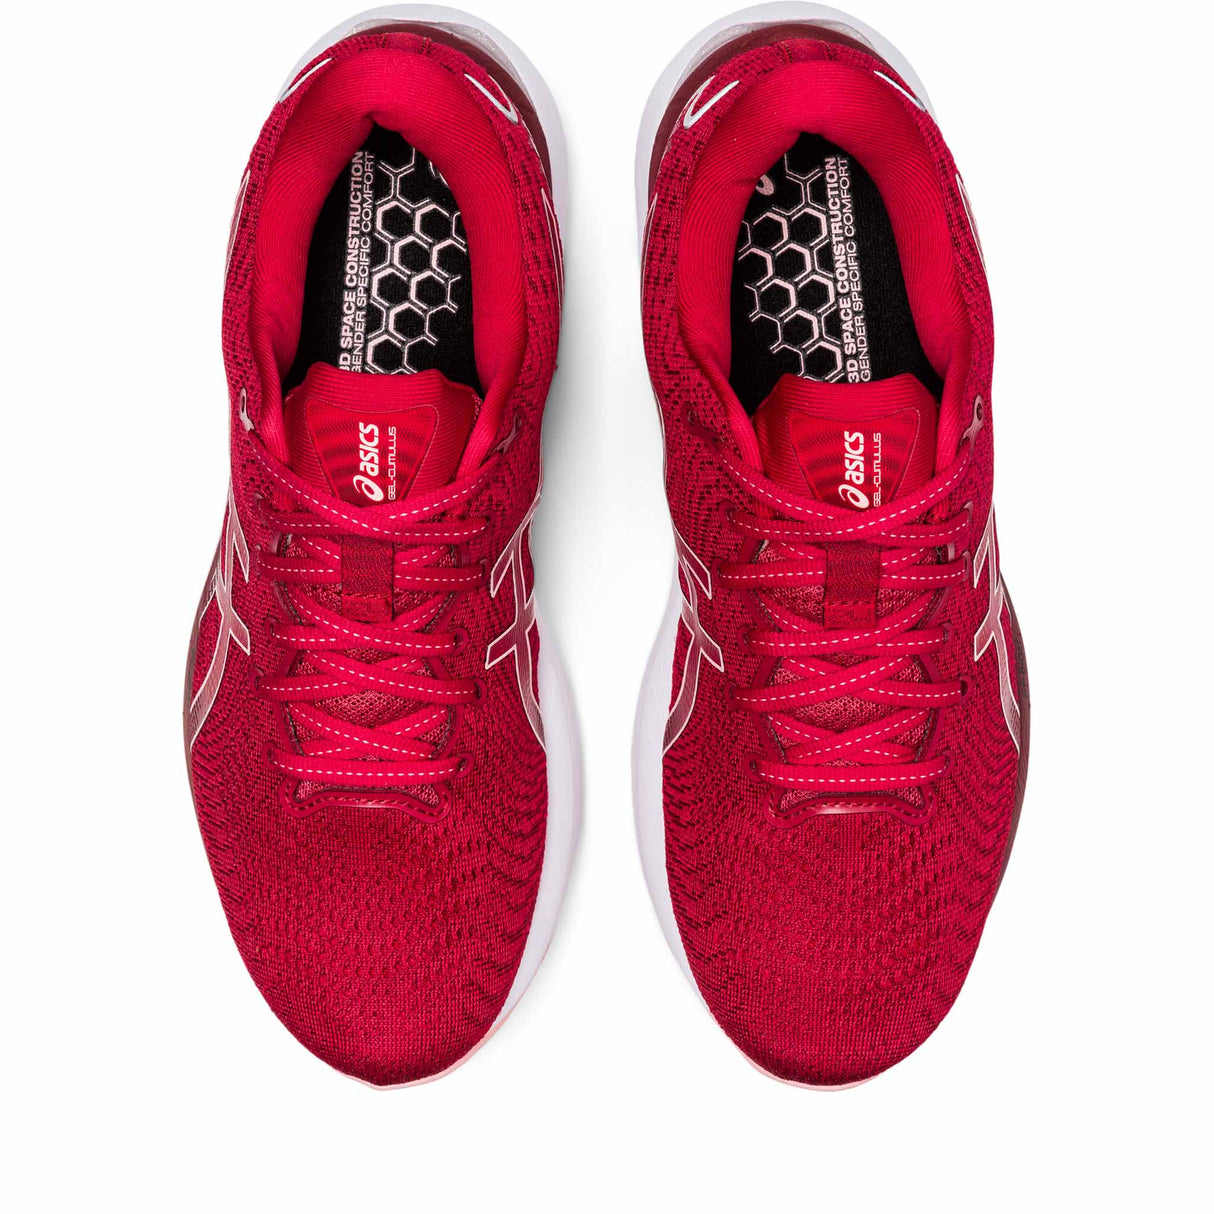 ASICS Gel Cumulus 24 chaussures de course à pied pour femme - Cranberry / Frosted Rose